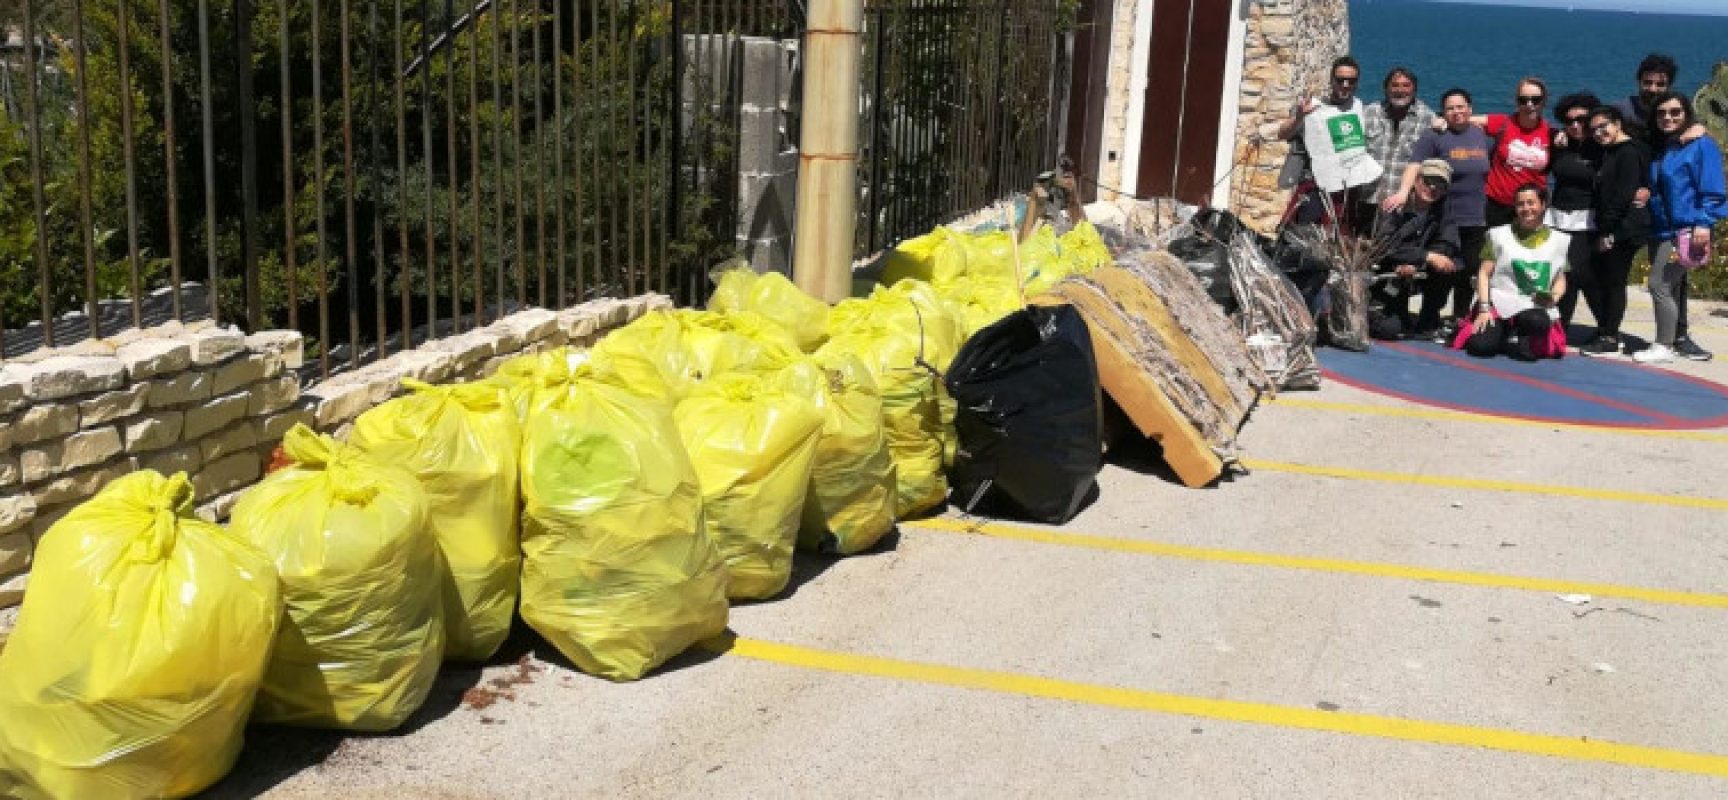 Pulizia spiaggia La Torretta, Pro Natura: raccolte 28 buste di plastica